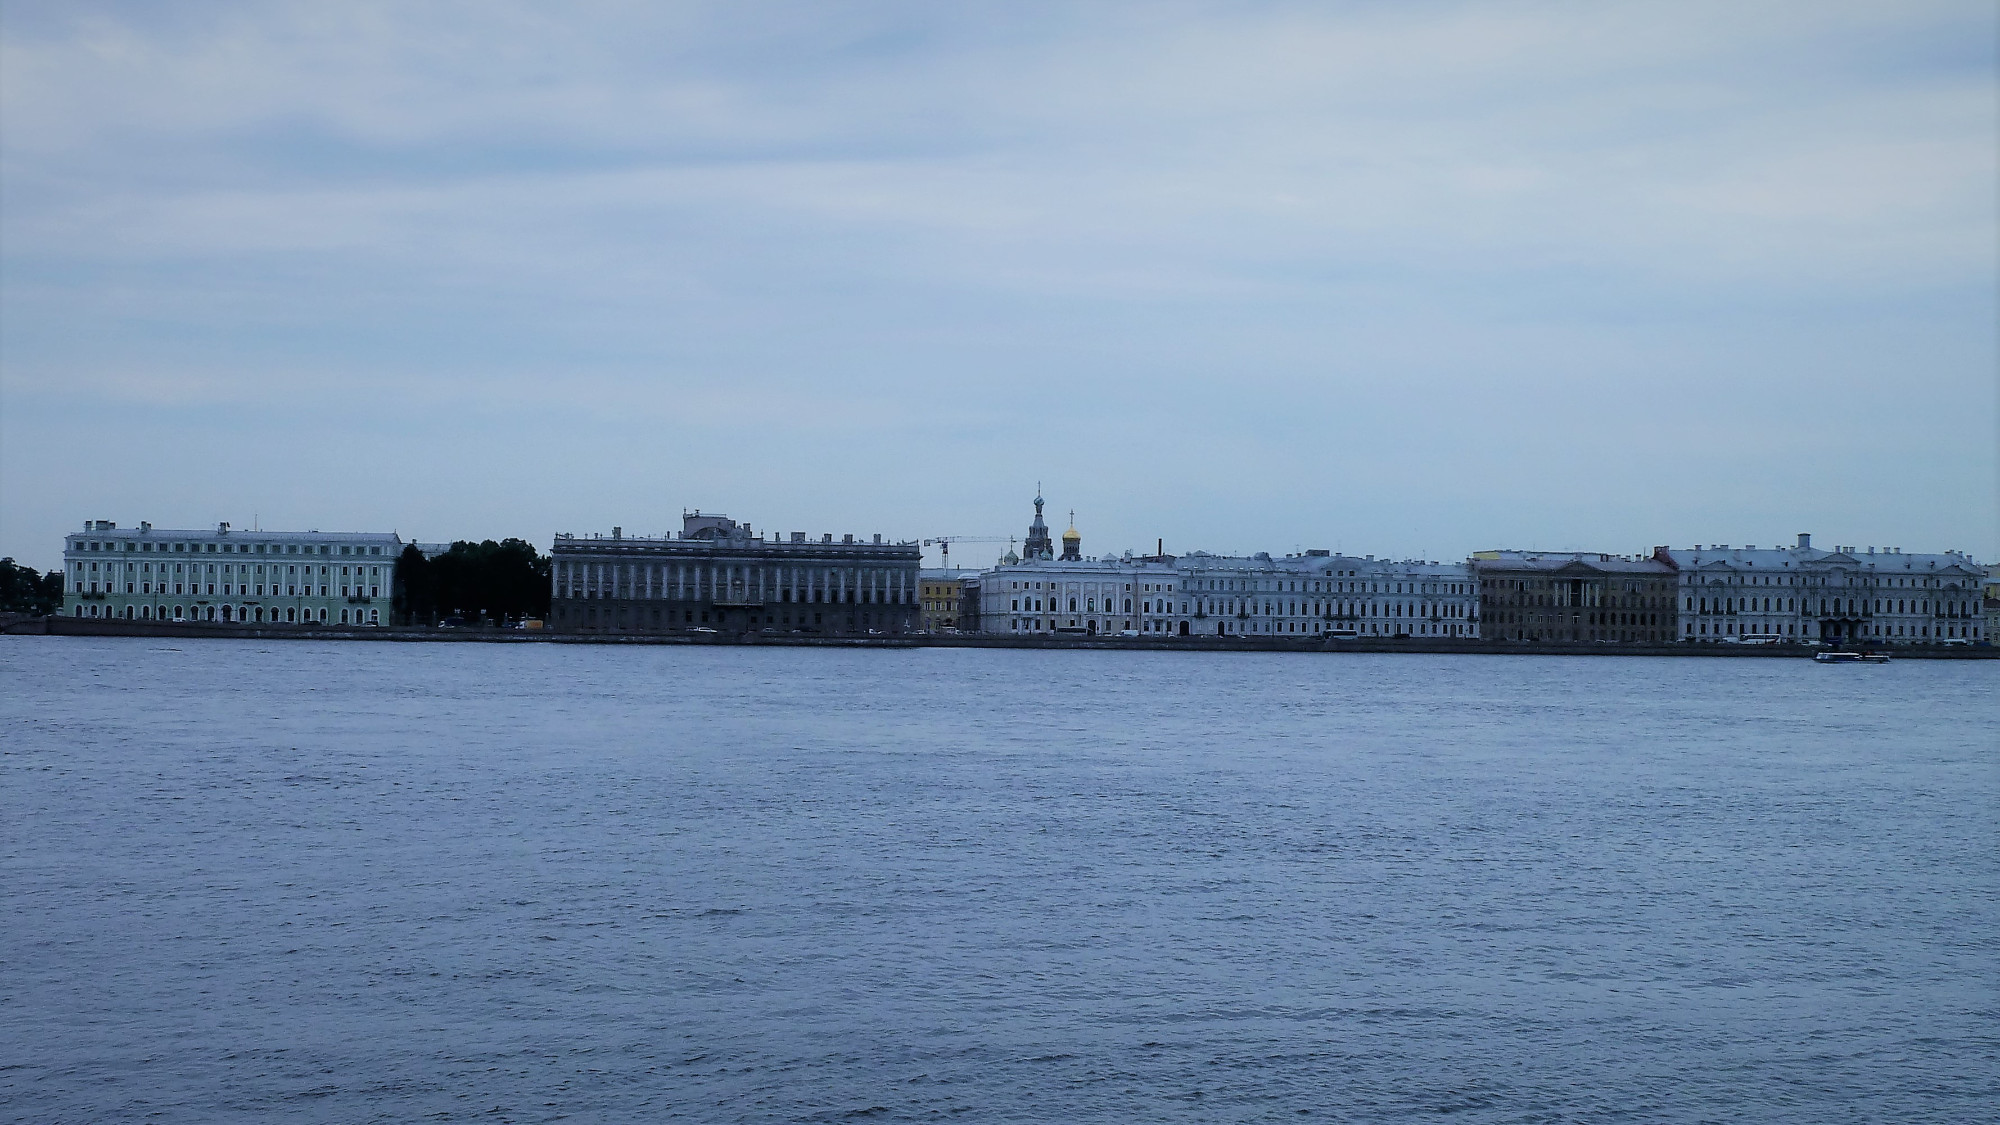 Palace embankment